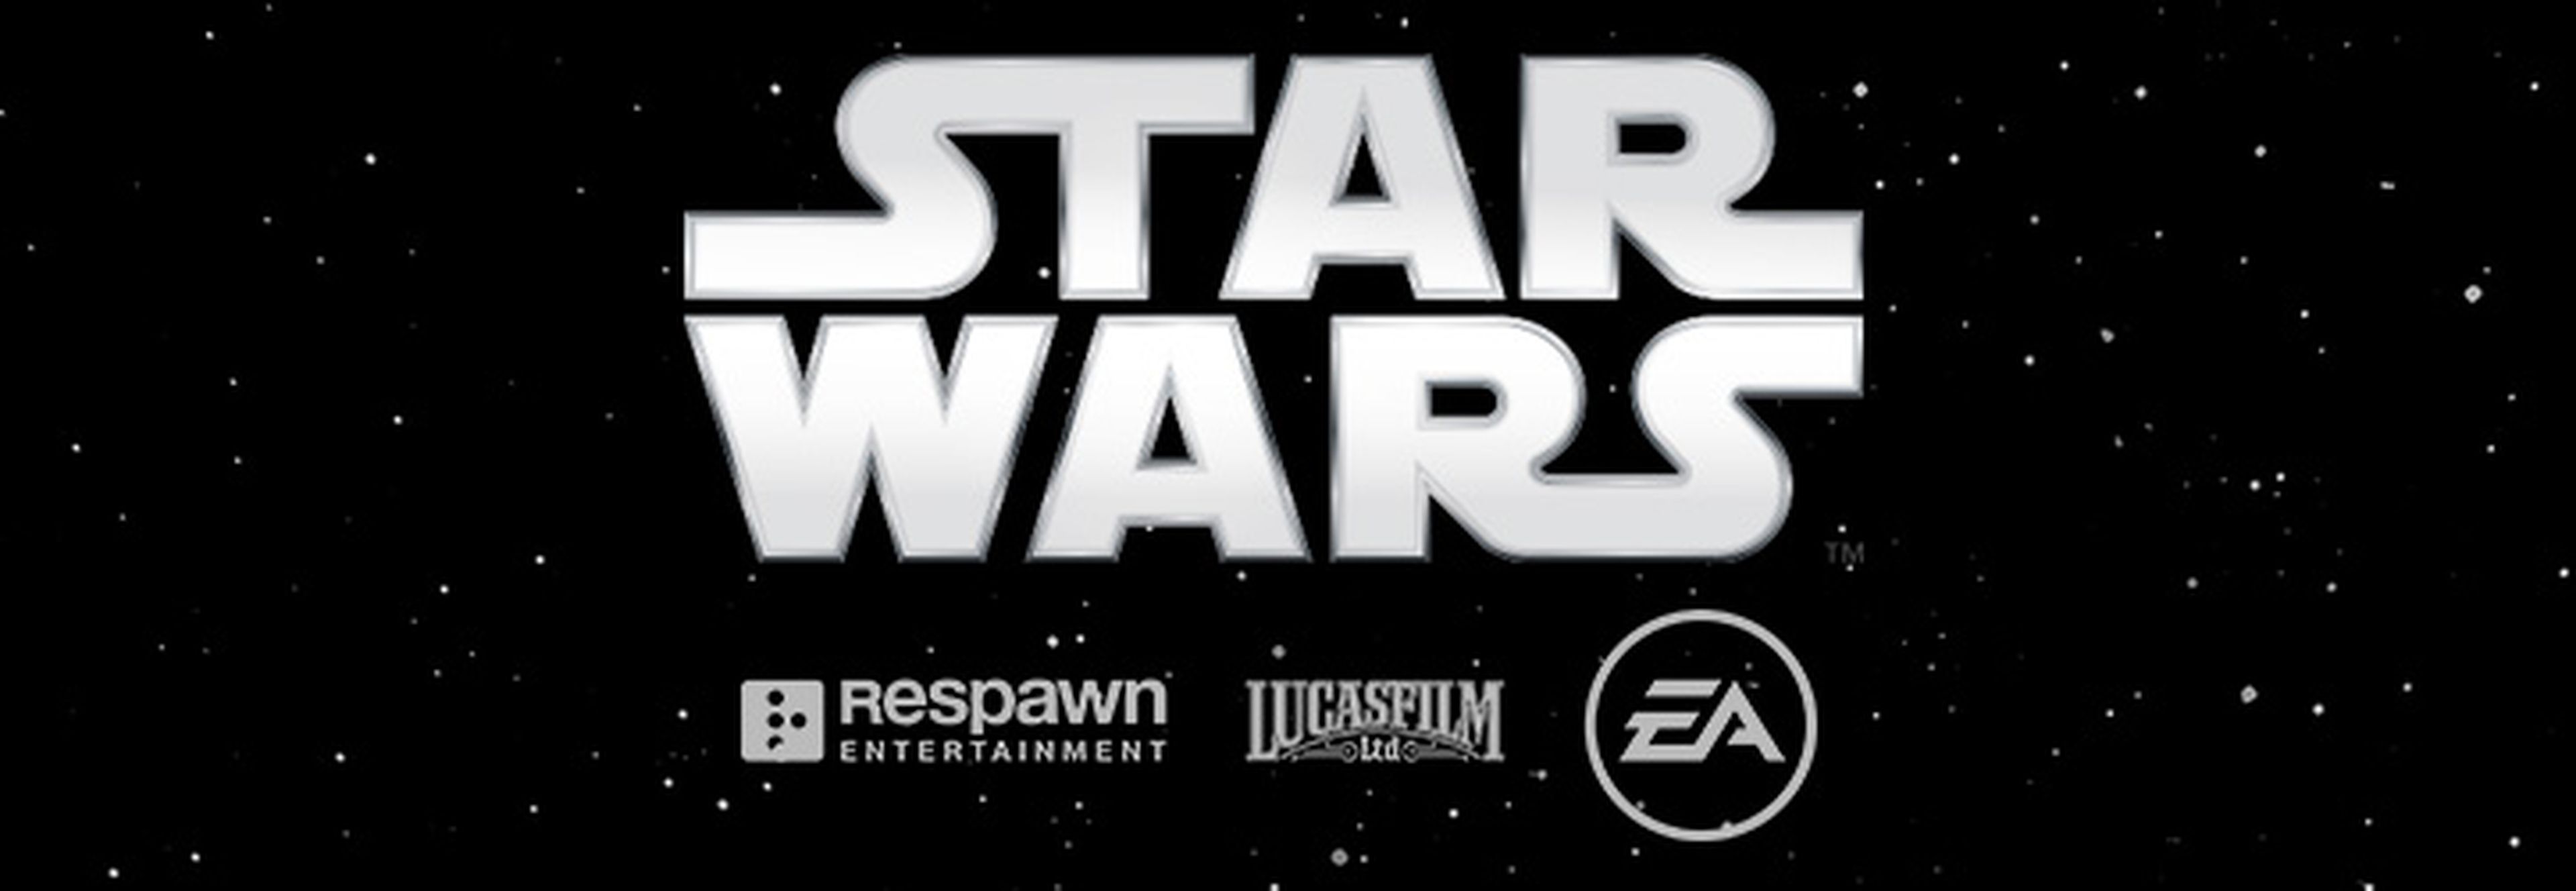 Star Wars - Respawn Entertainment trabaja en un nuevo juego